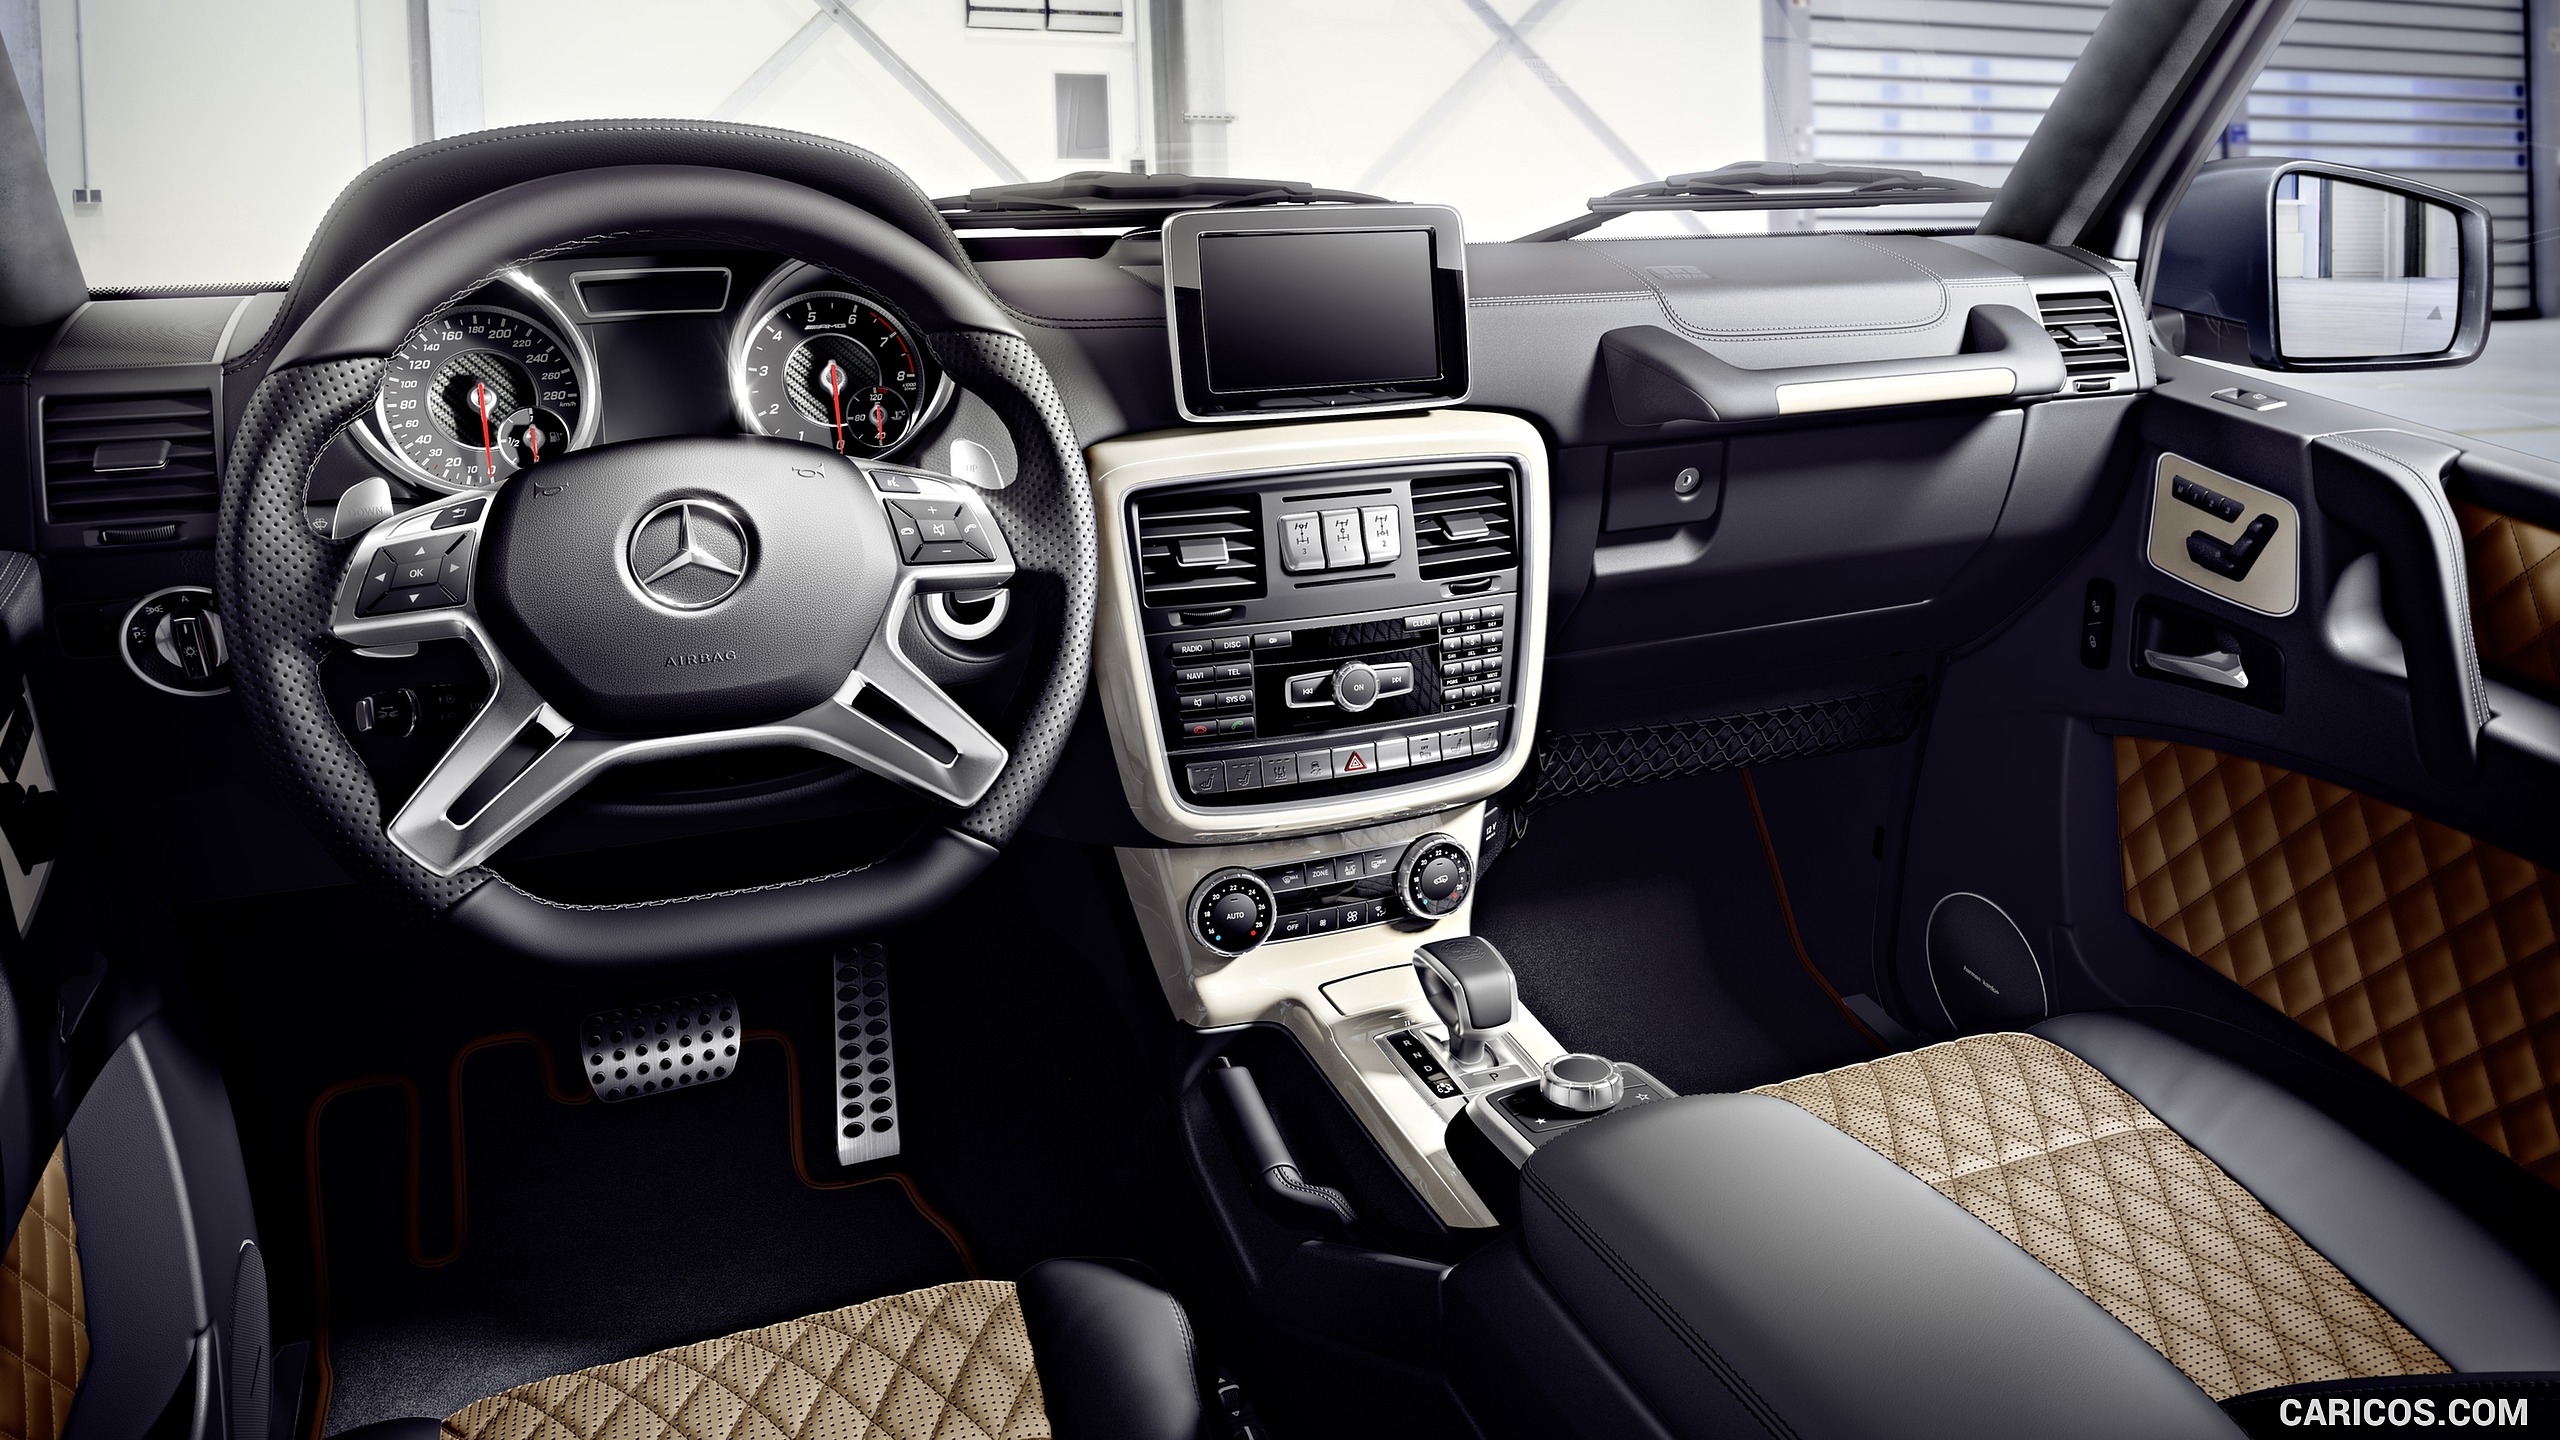 2016 Mercedes-AMG G65 (Designo Nappa Leather Black/Sand, Designo Piano Lacquer Trim in Champagne White) - Interior, #2 of 41